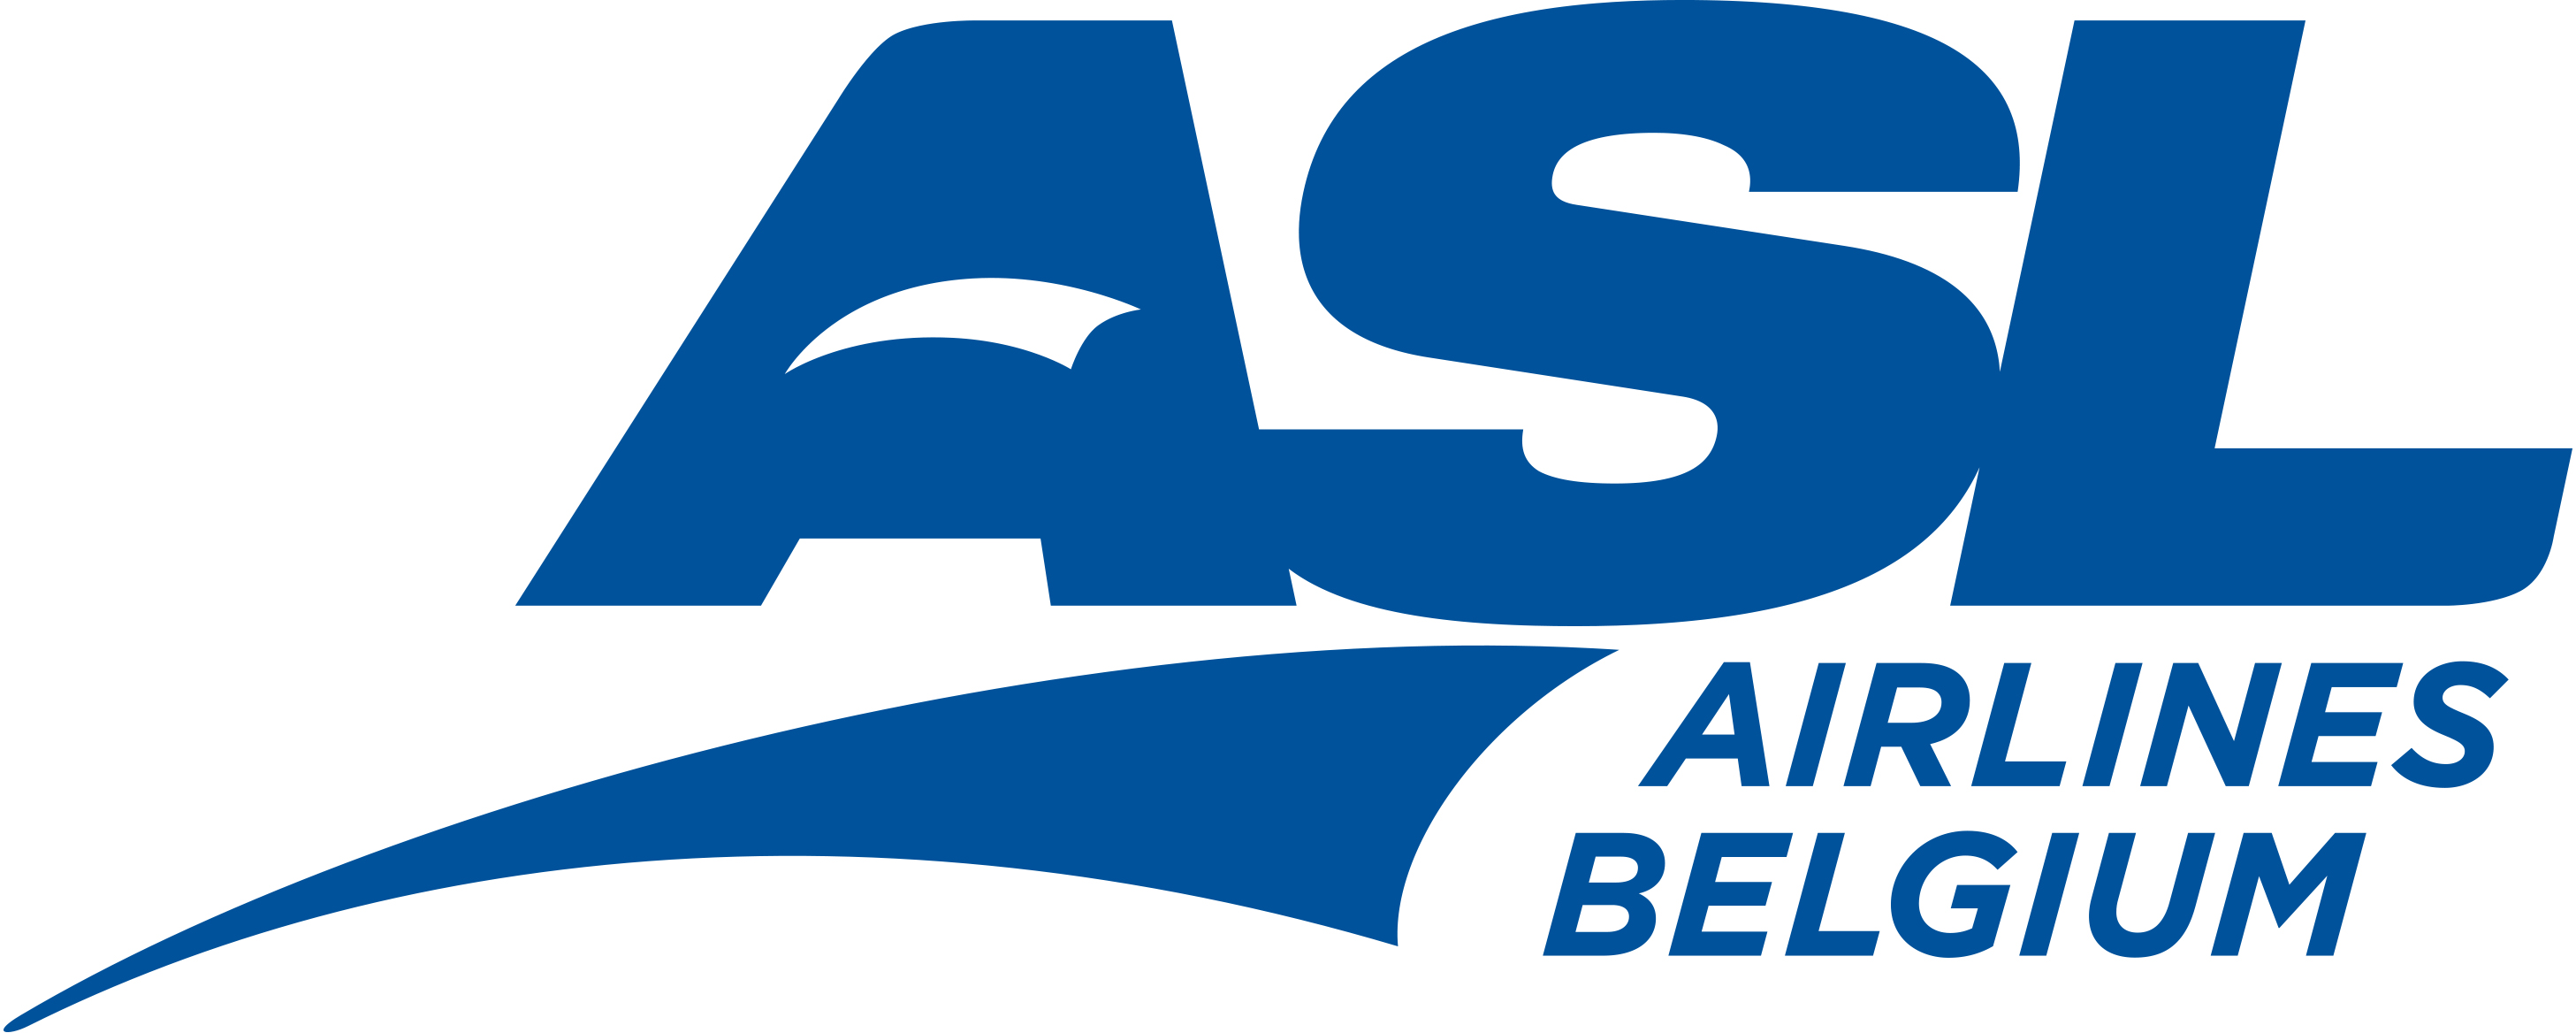 ASL Airlines Belgium Logo.jpg